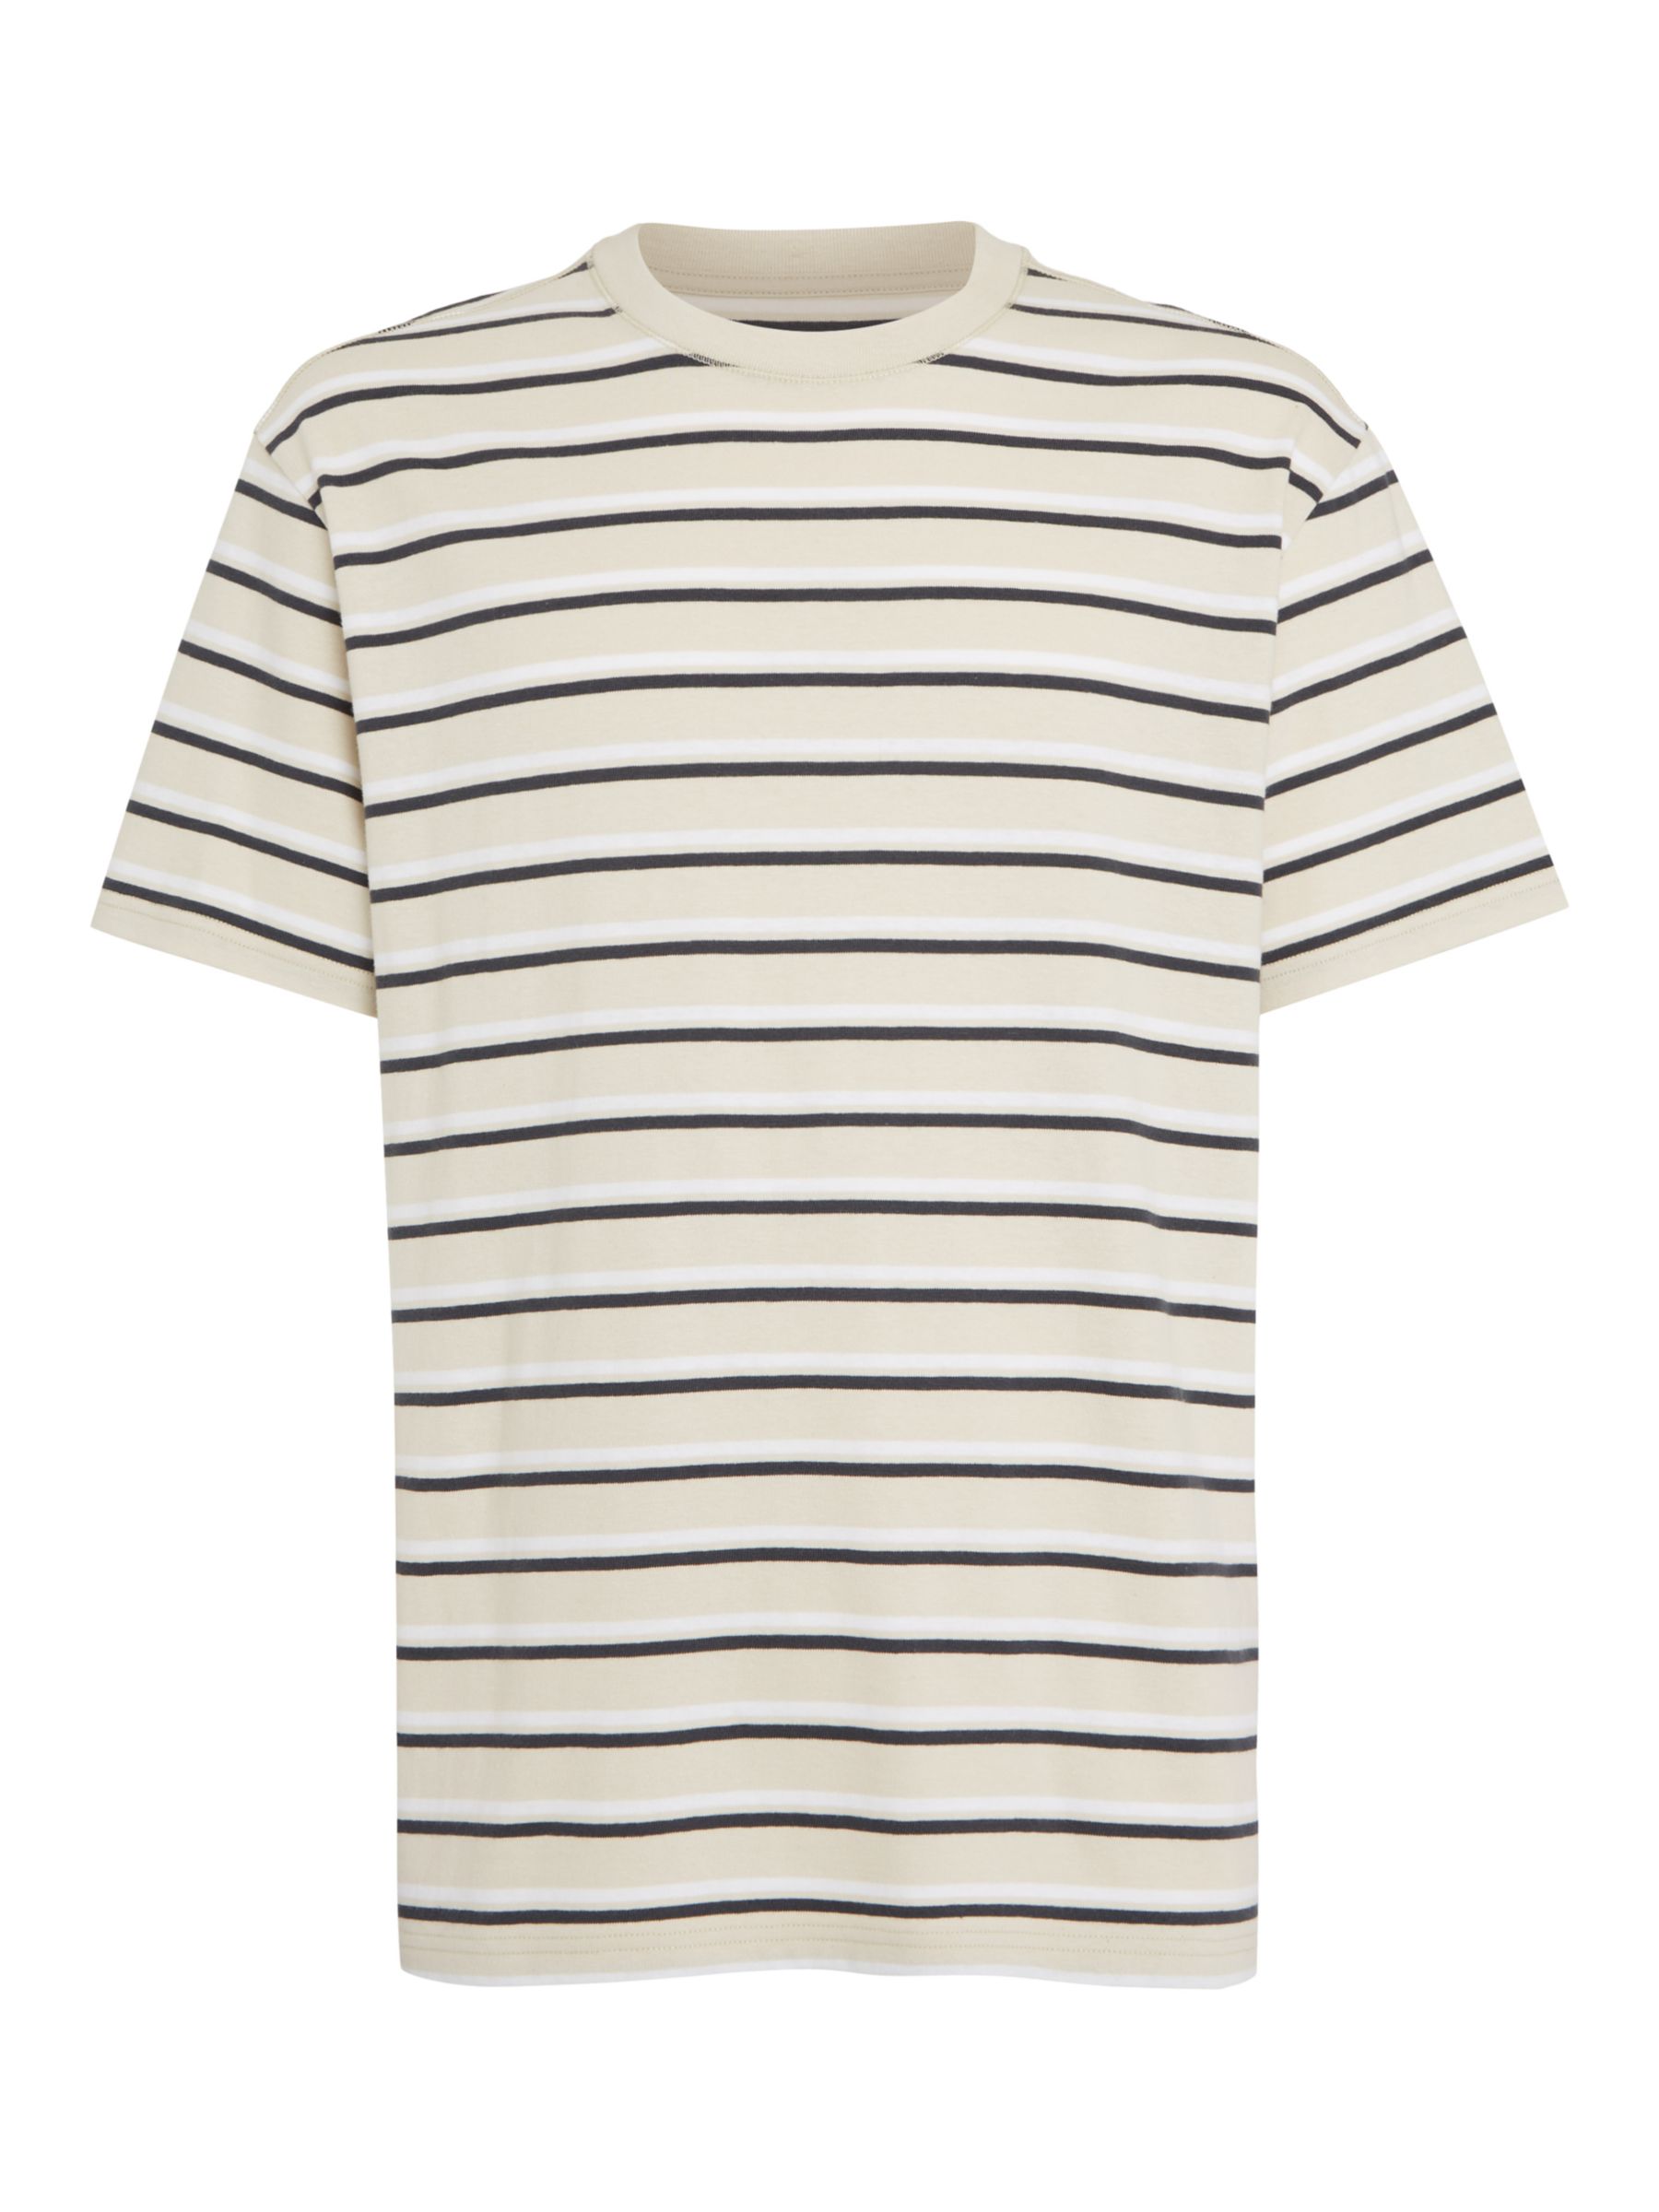 Tommy Jeans Rib Knit Stripe Short Sleeve T-Shirt, Newsprint/Multi, XL